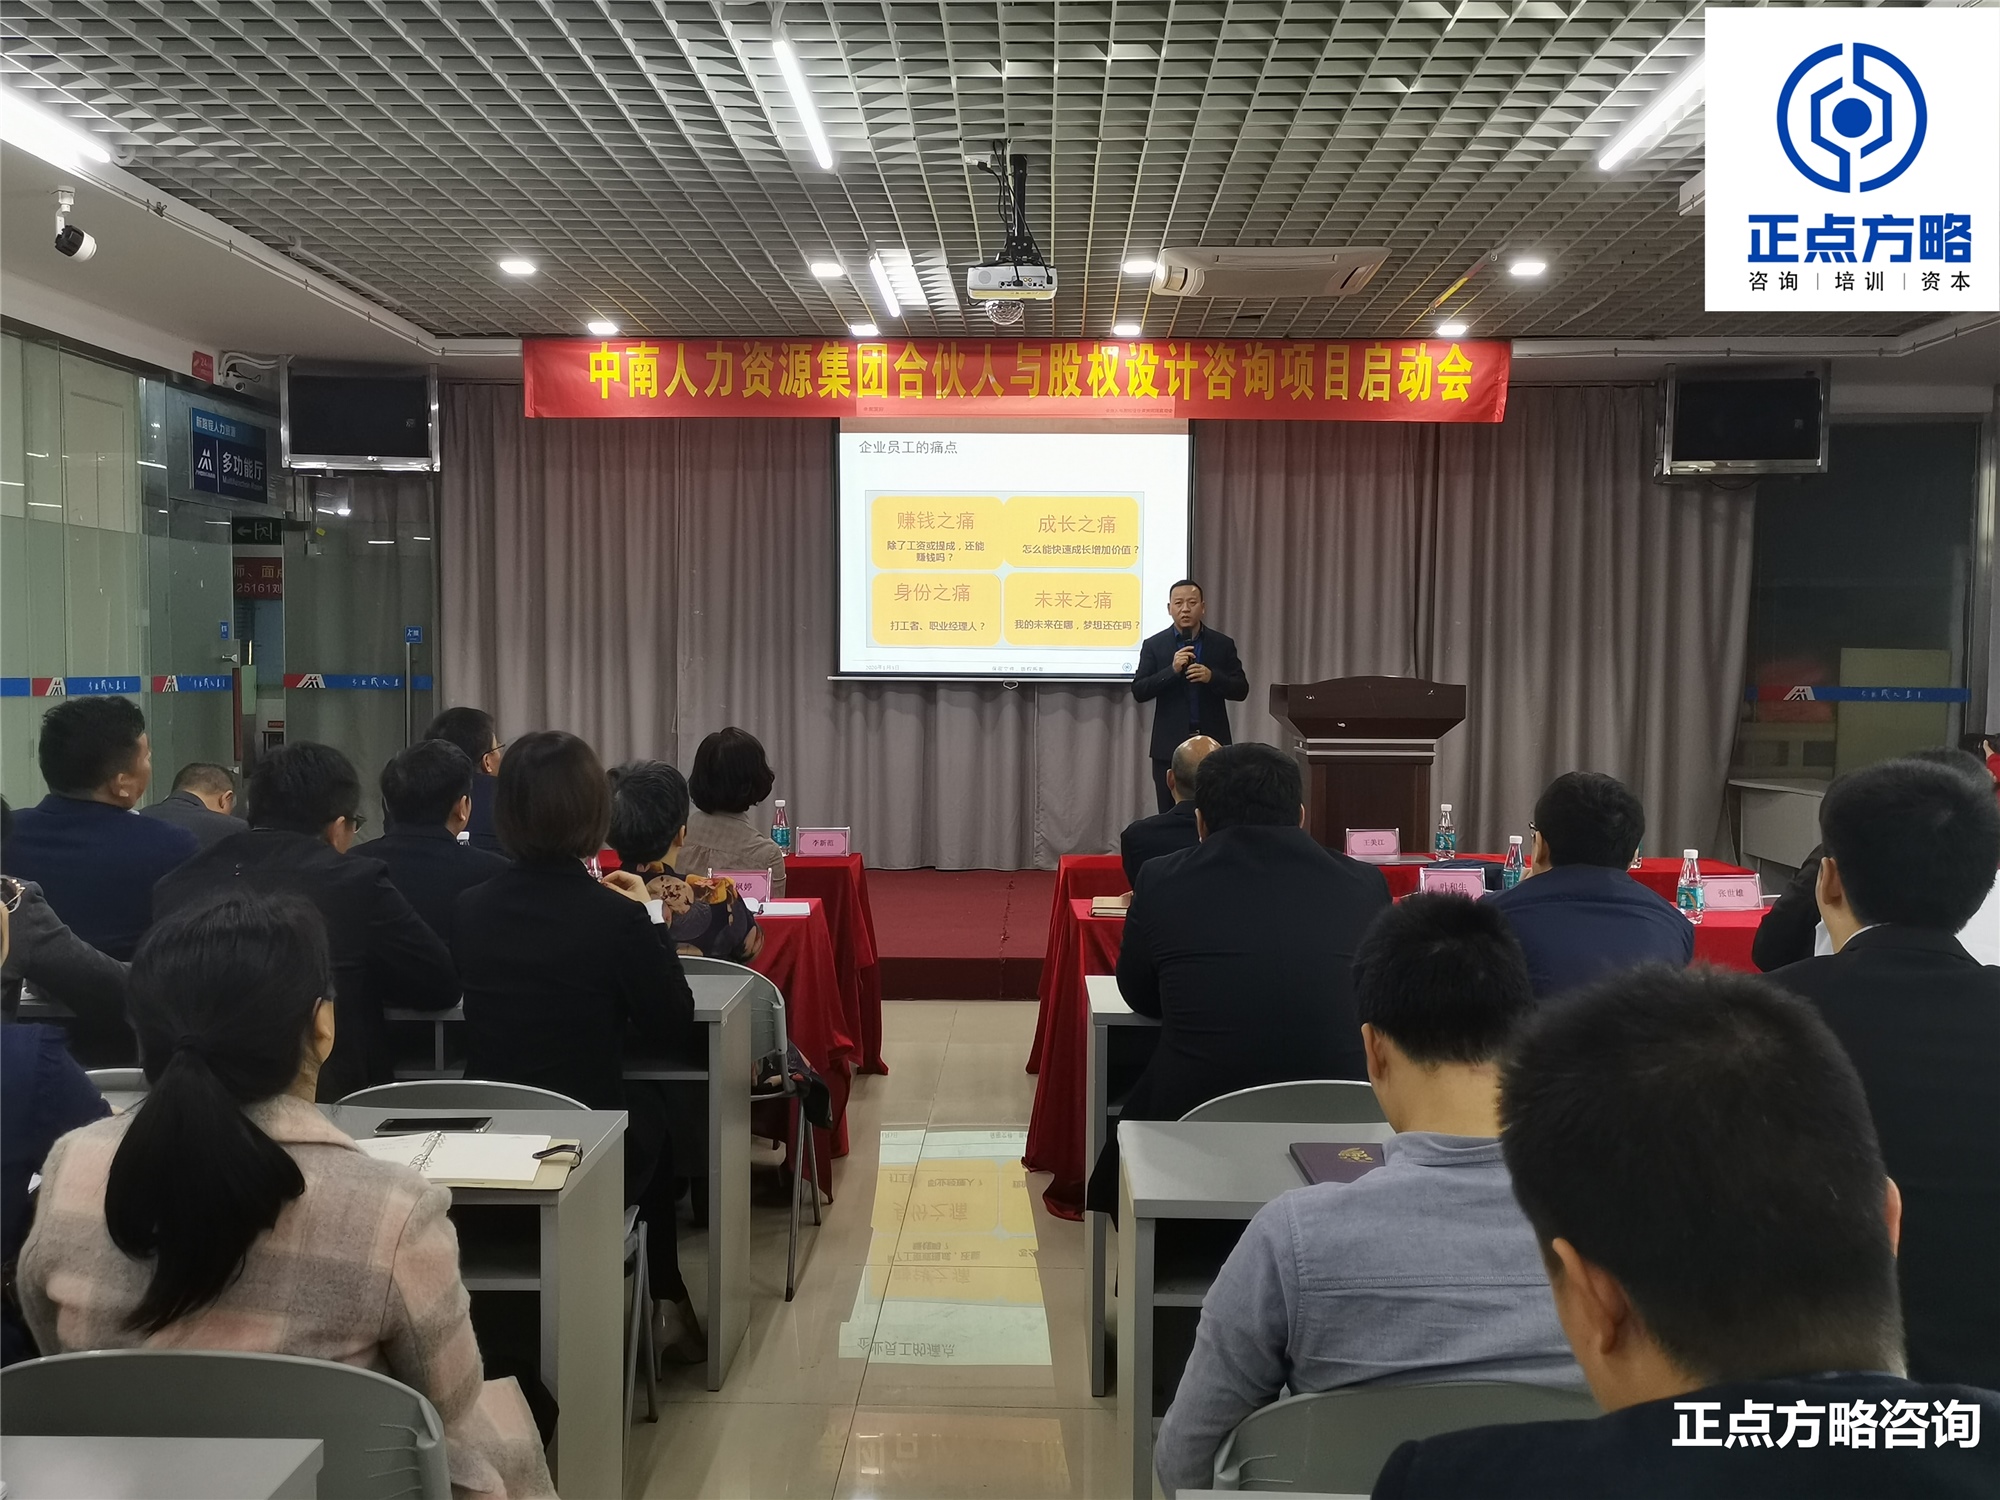 王美江老师第22期《合伙人裂变与股权密码》方案班